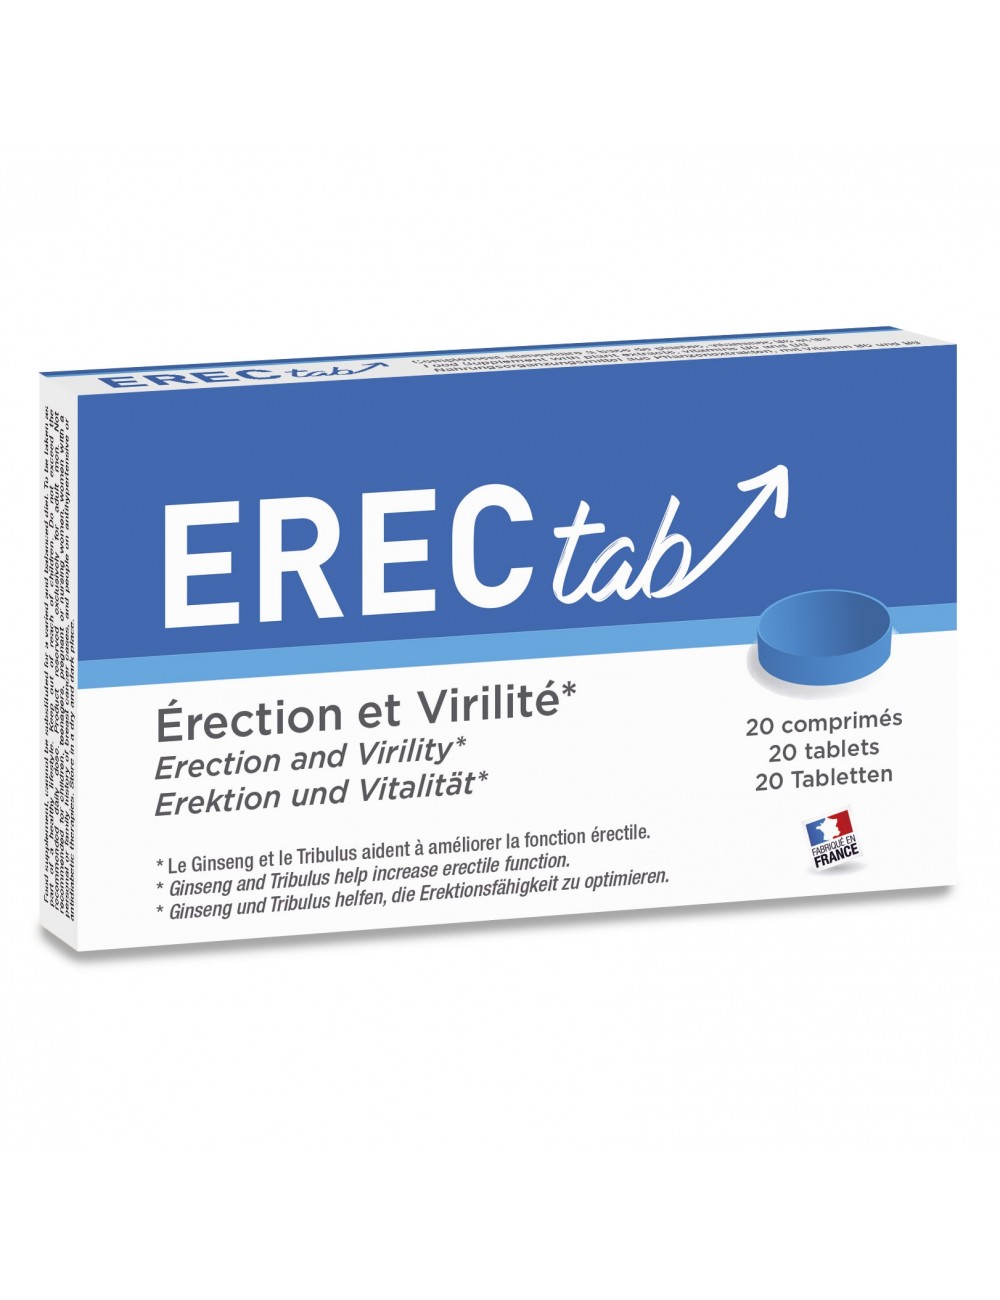 ErecTab stimulant 20 Comprimés - LAB-3794 - Aphrodisiaques - Labophyto